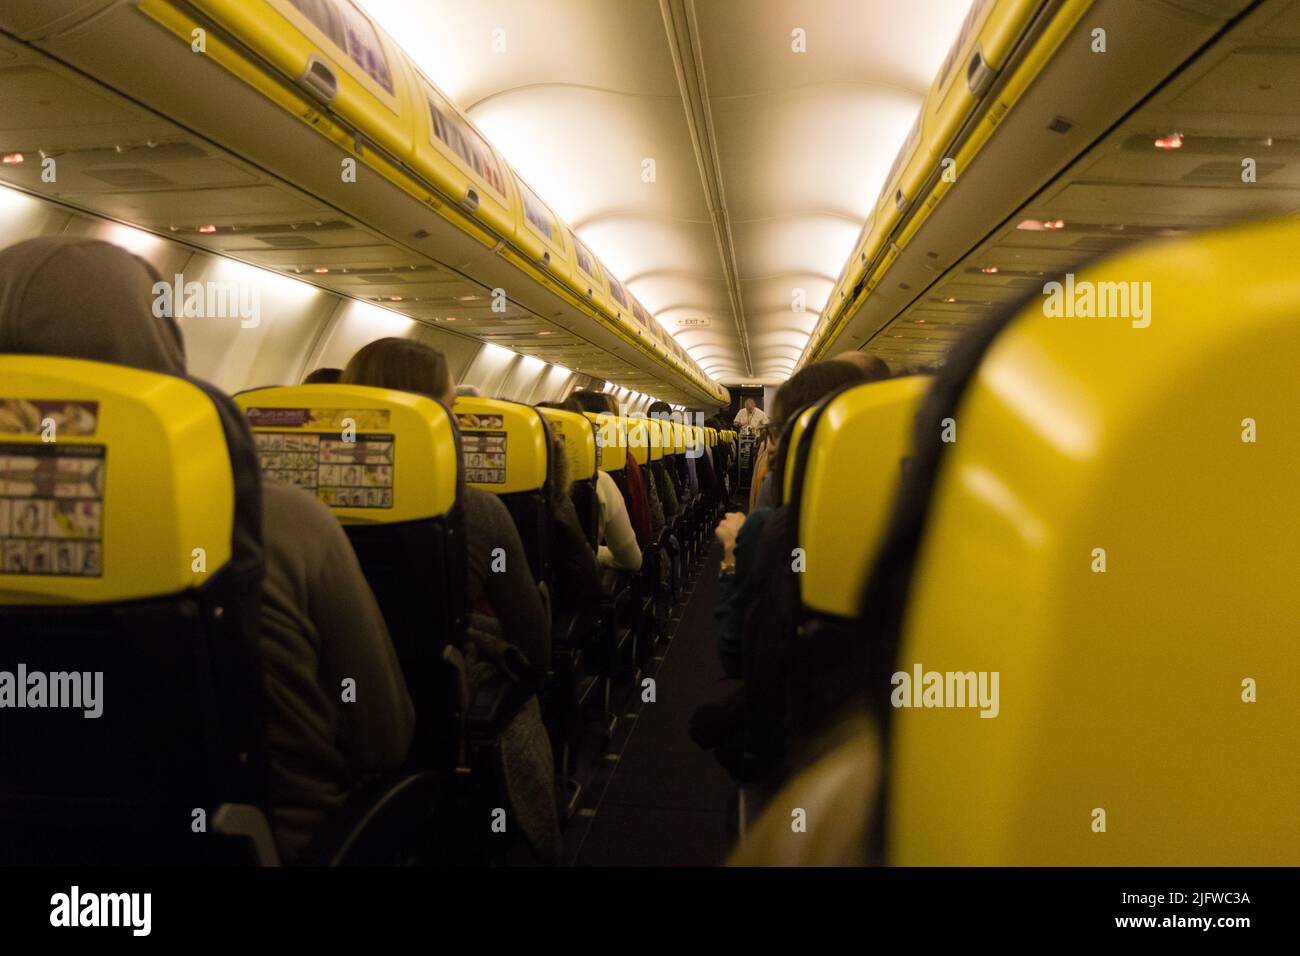 L'allée et l'intérieur d'un avion à bord. L'avion est un Boeing 737-800 de Ryanair. Banque D'Images